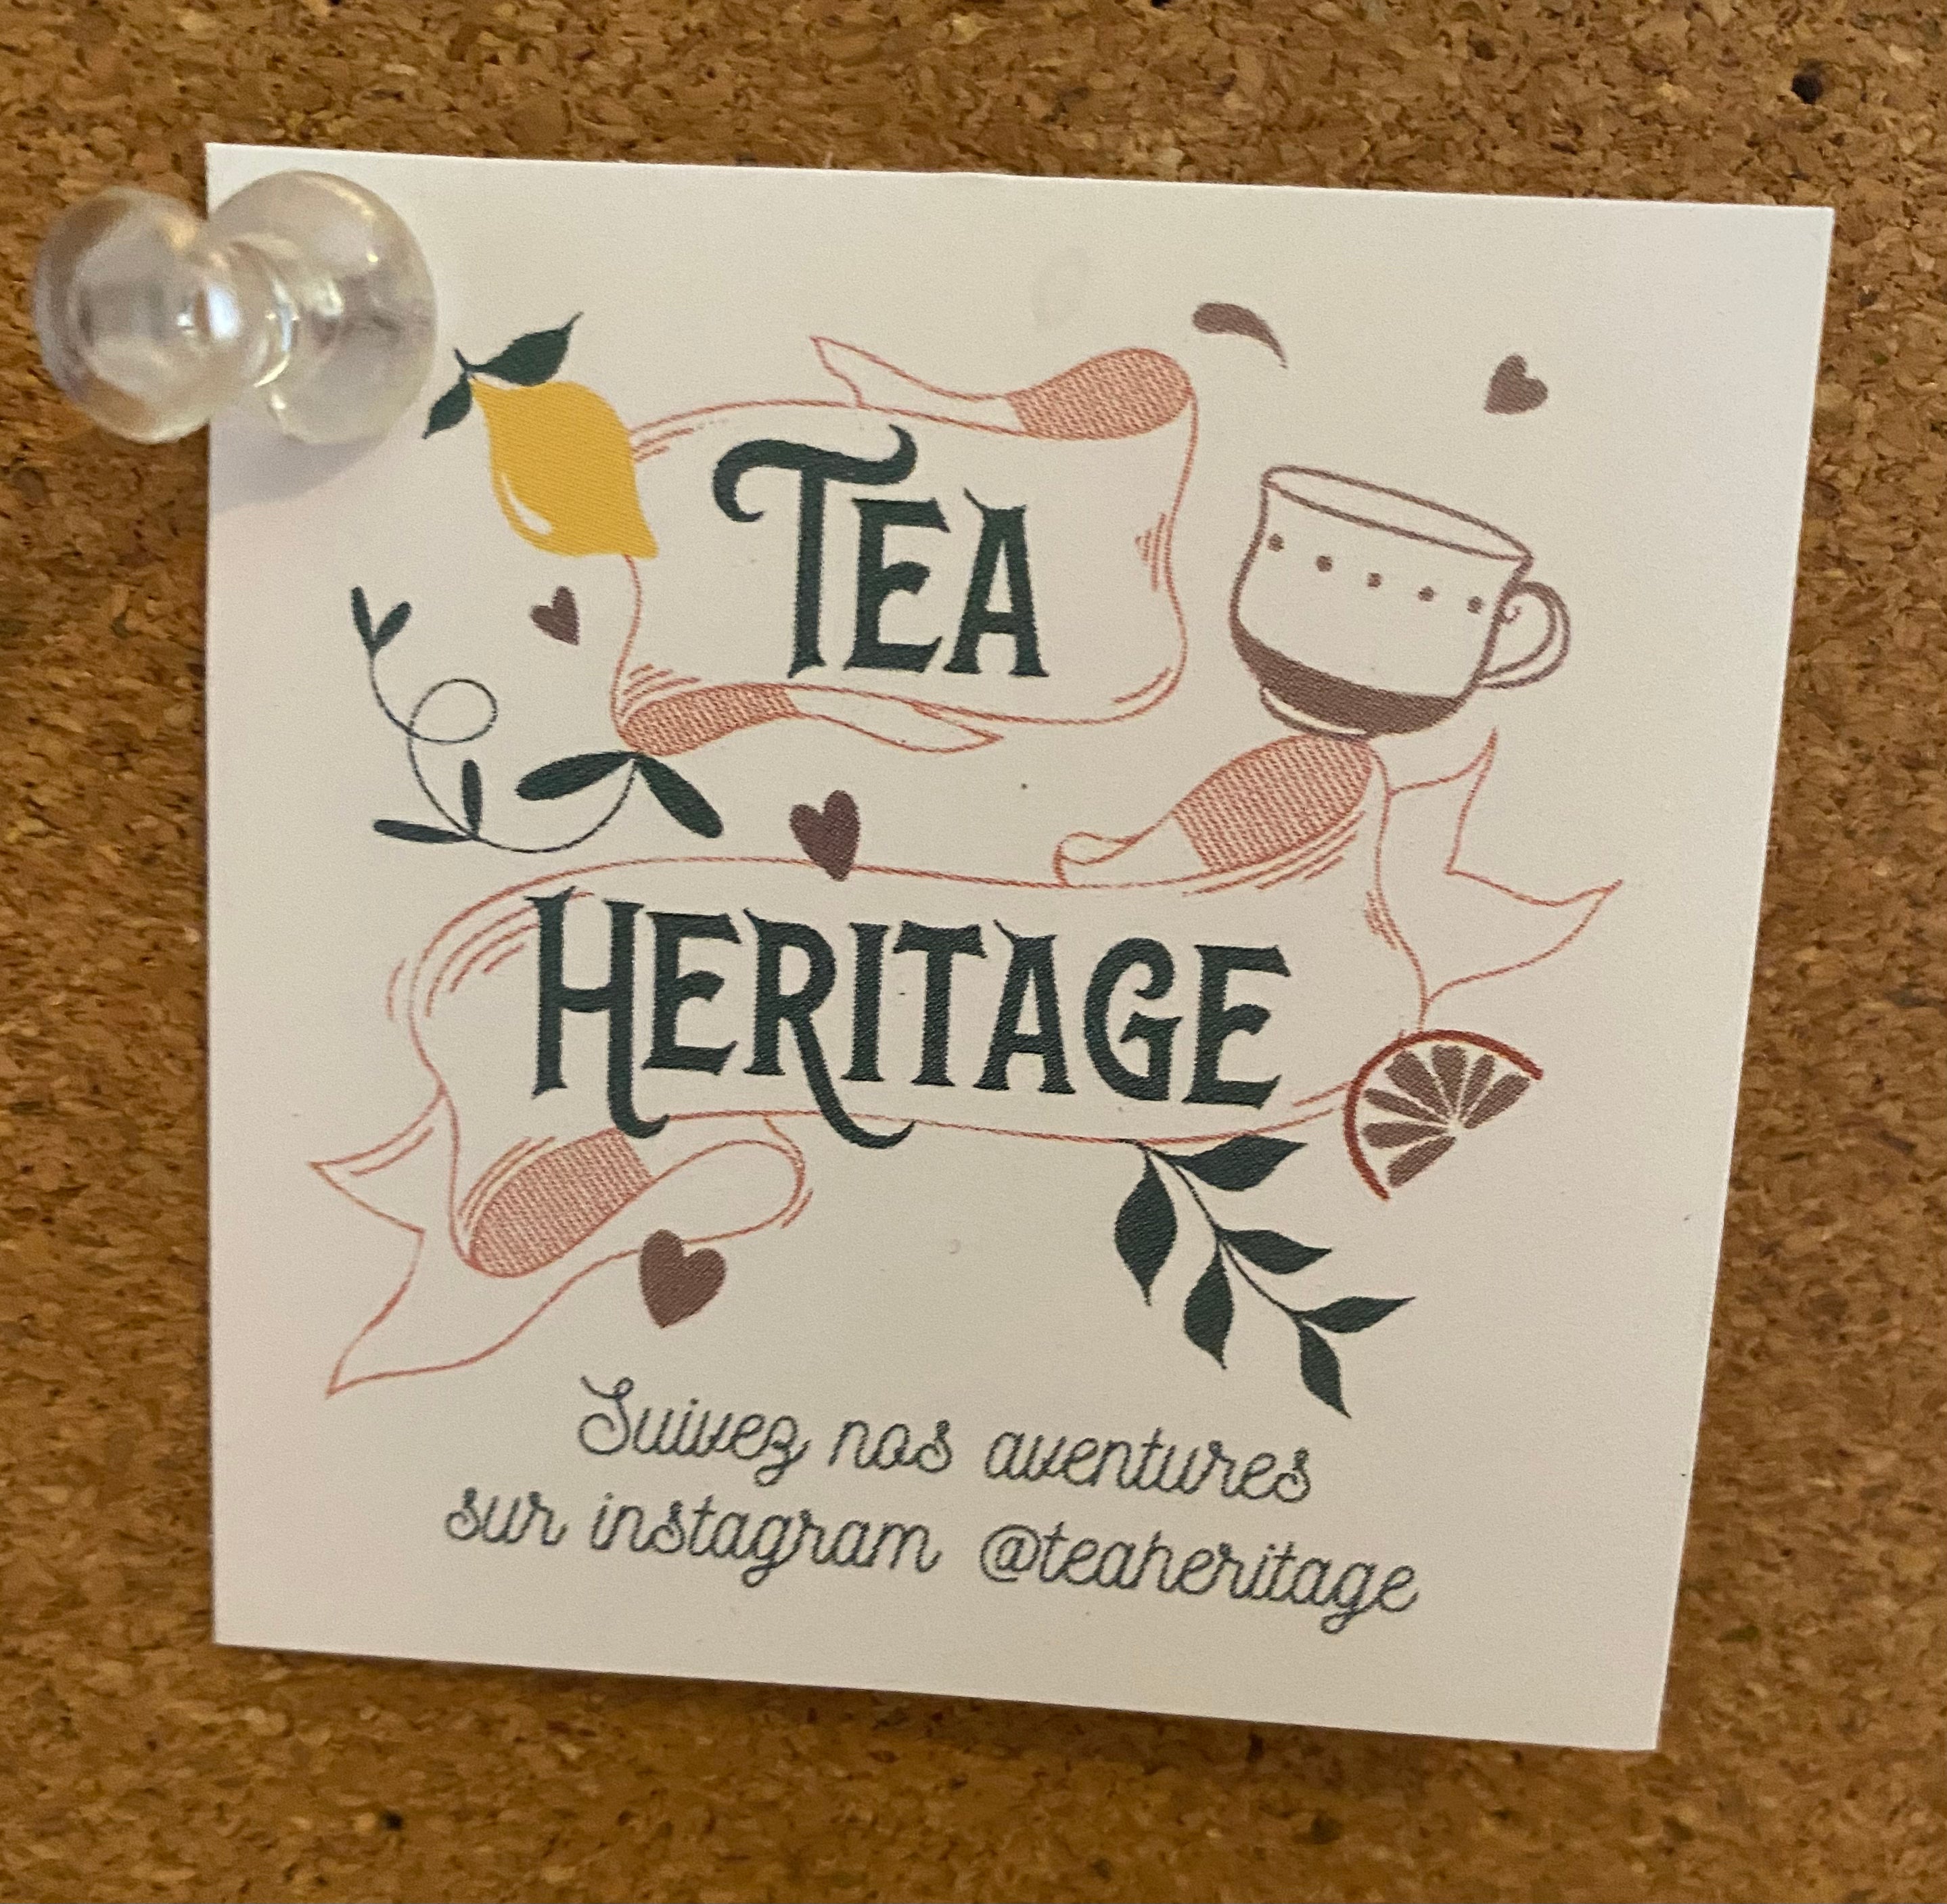 Rooibos Blood Orange Tea by Tea Heritage